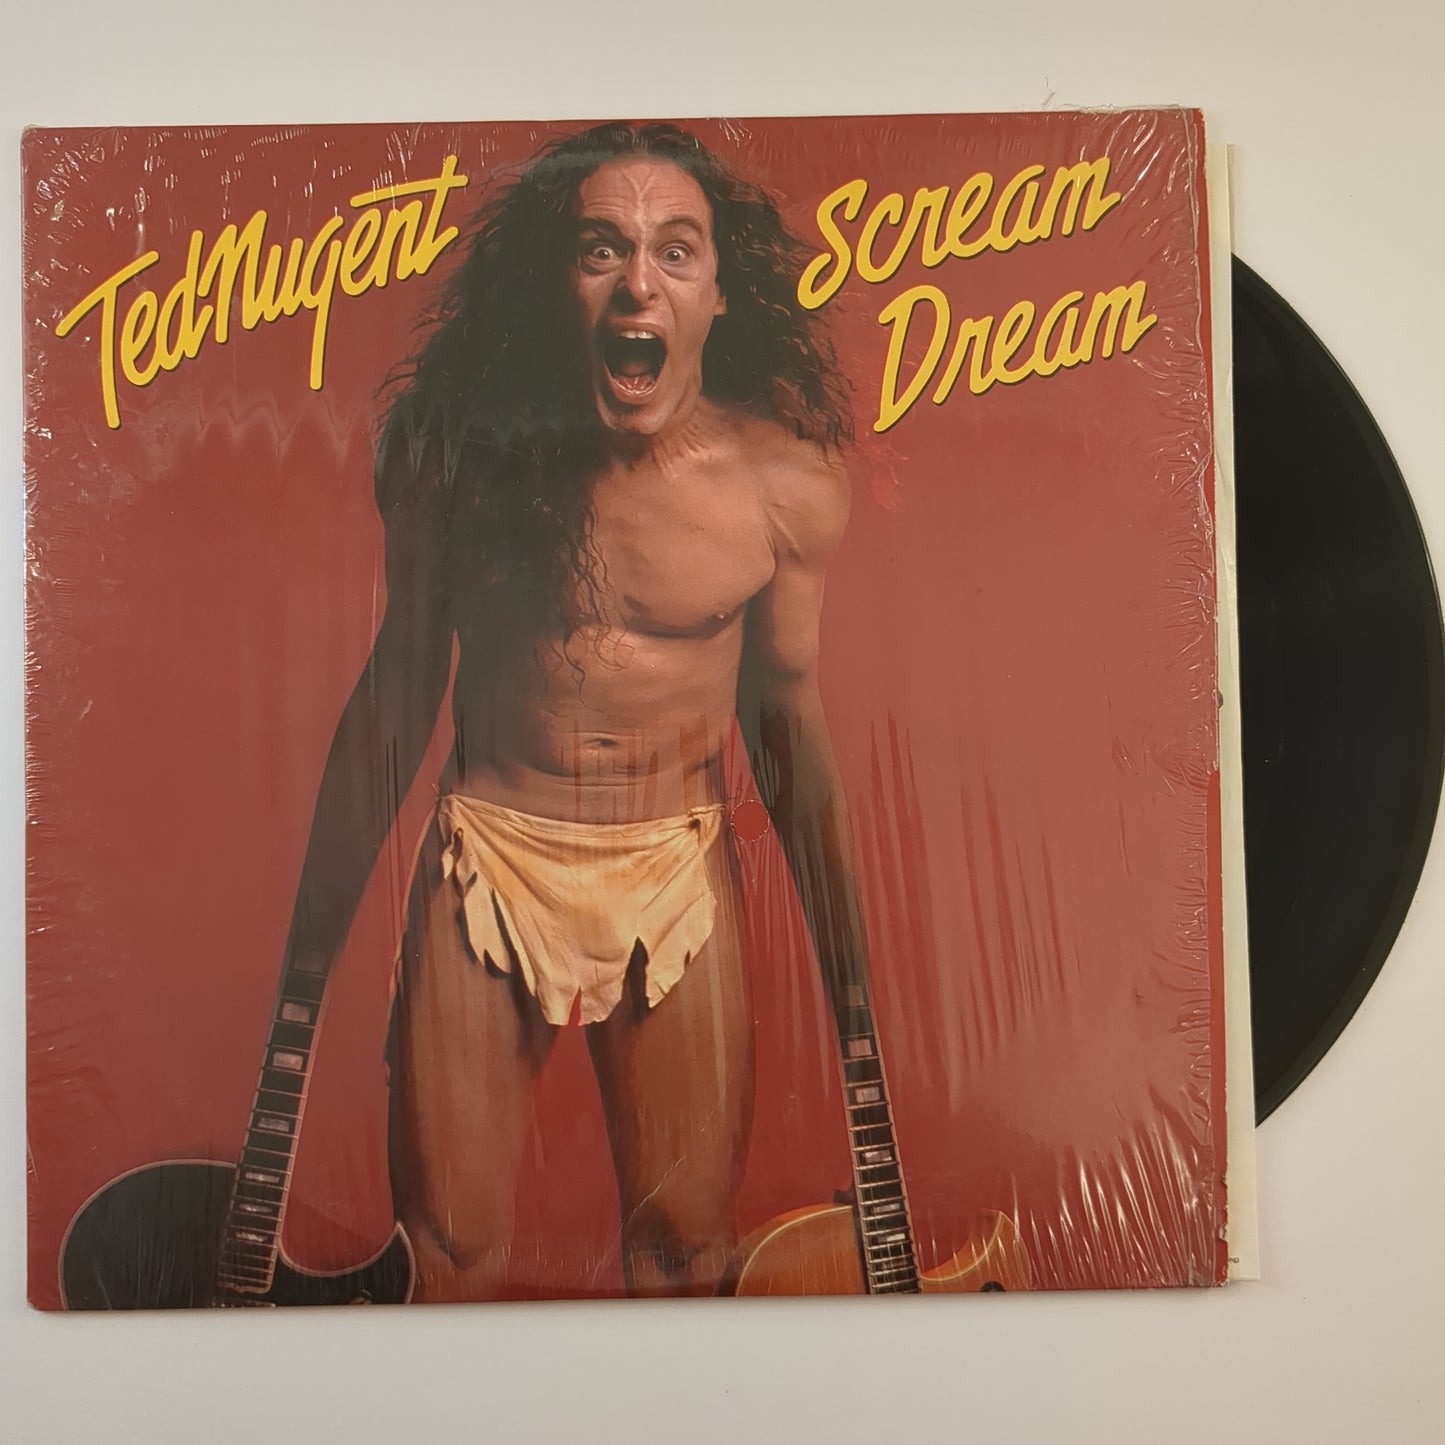 Ted Nugent - 'Scream Dream'